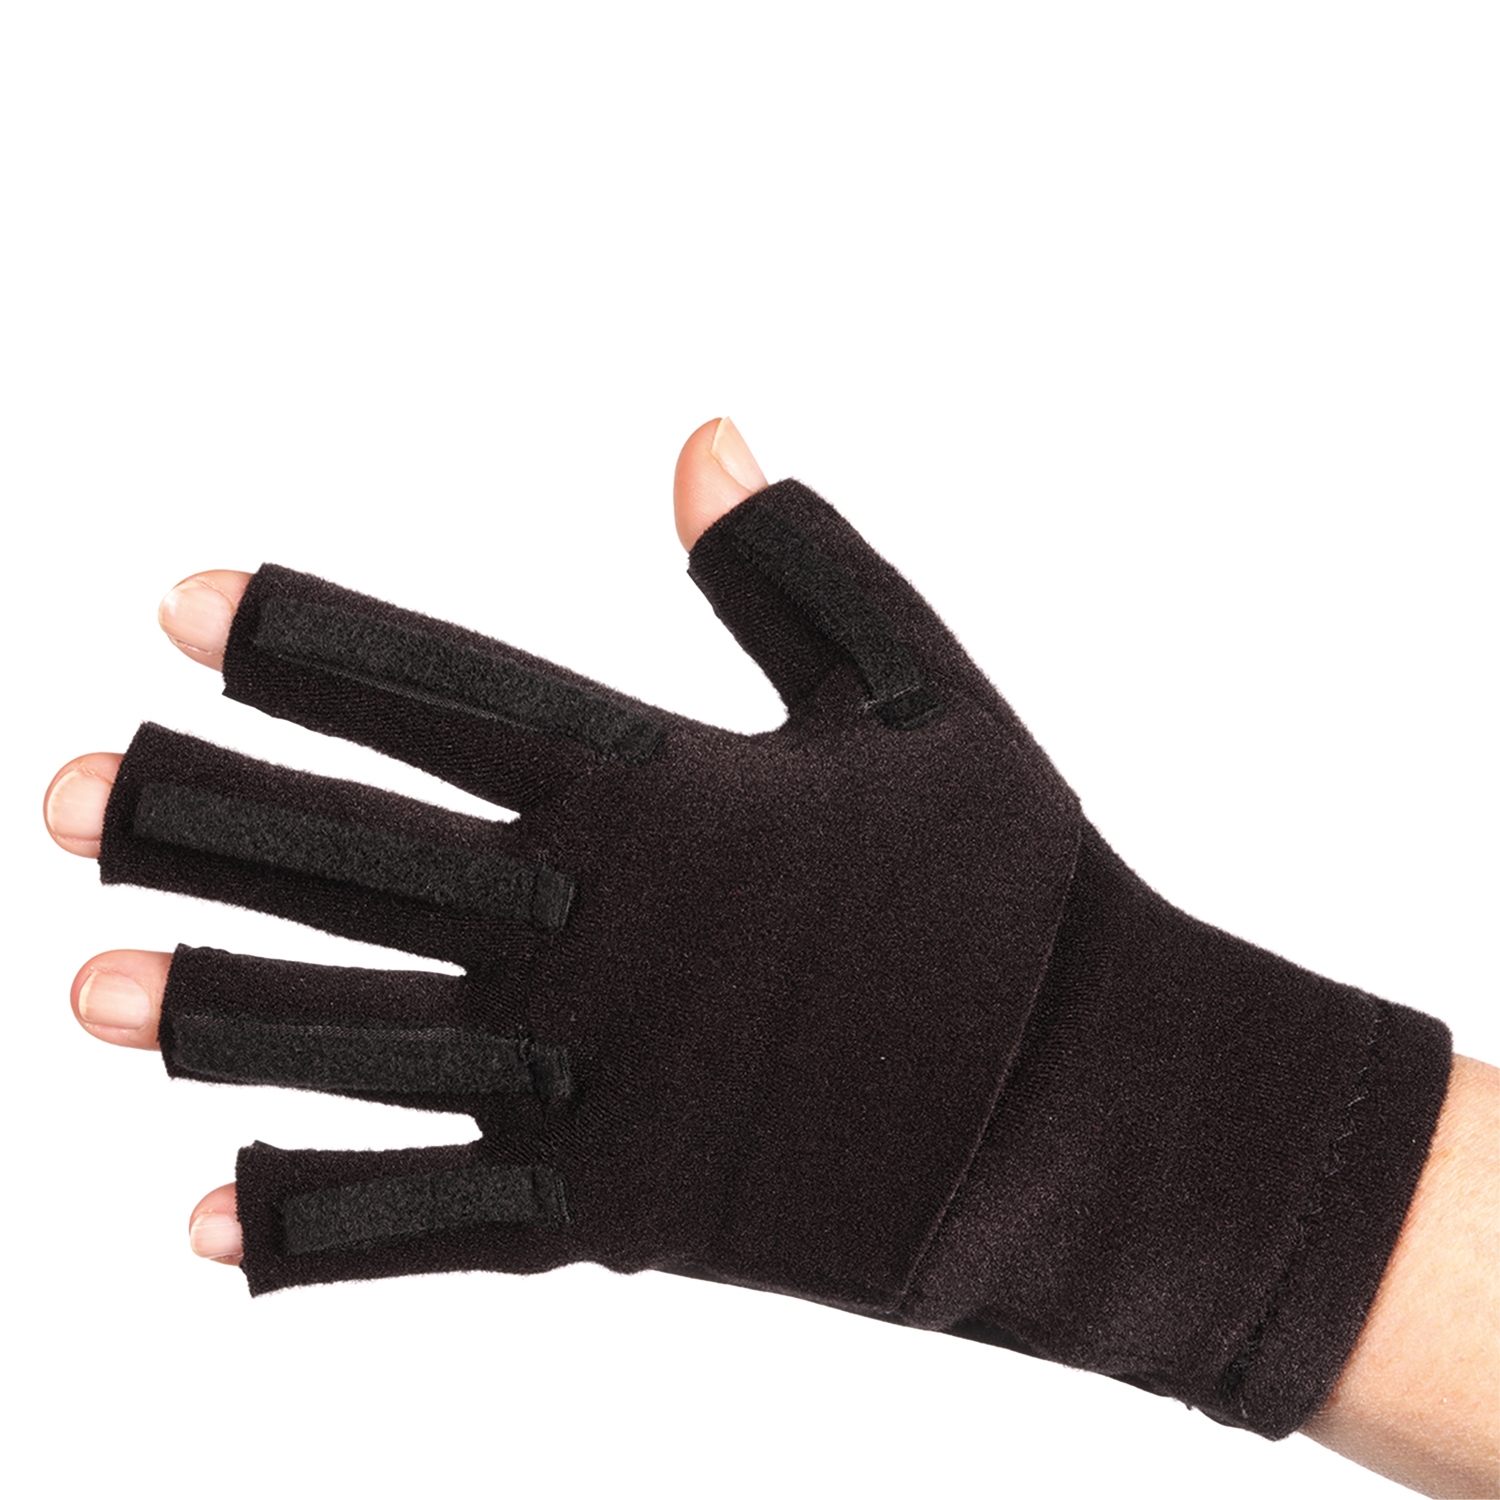 Medafit Dorsal Pocket Glove S Left